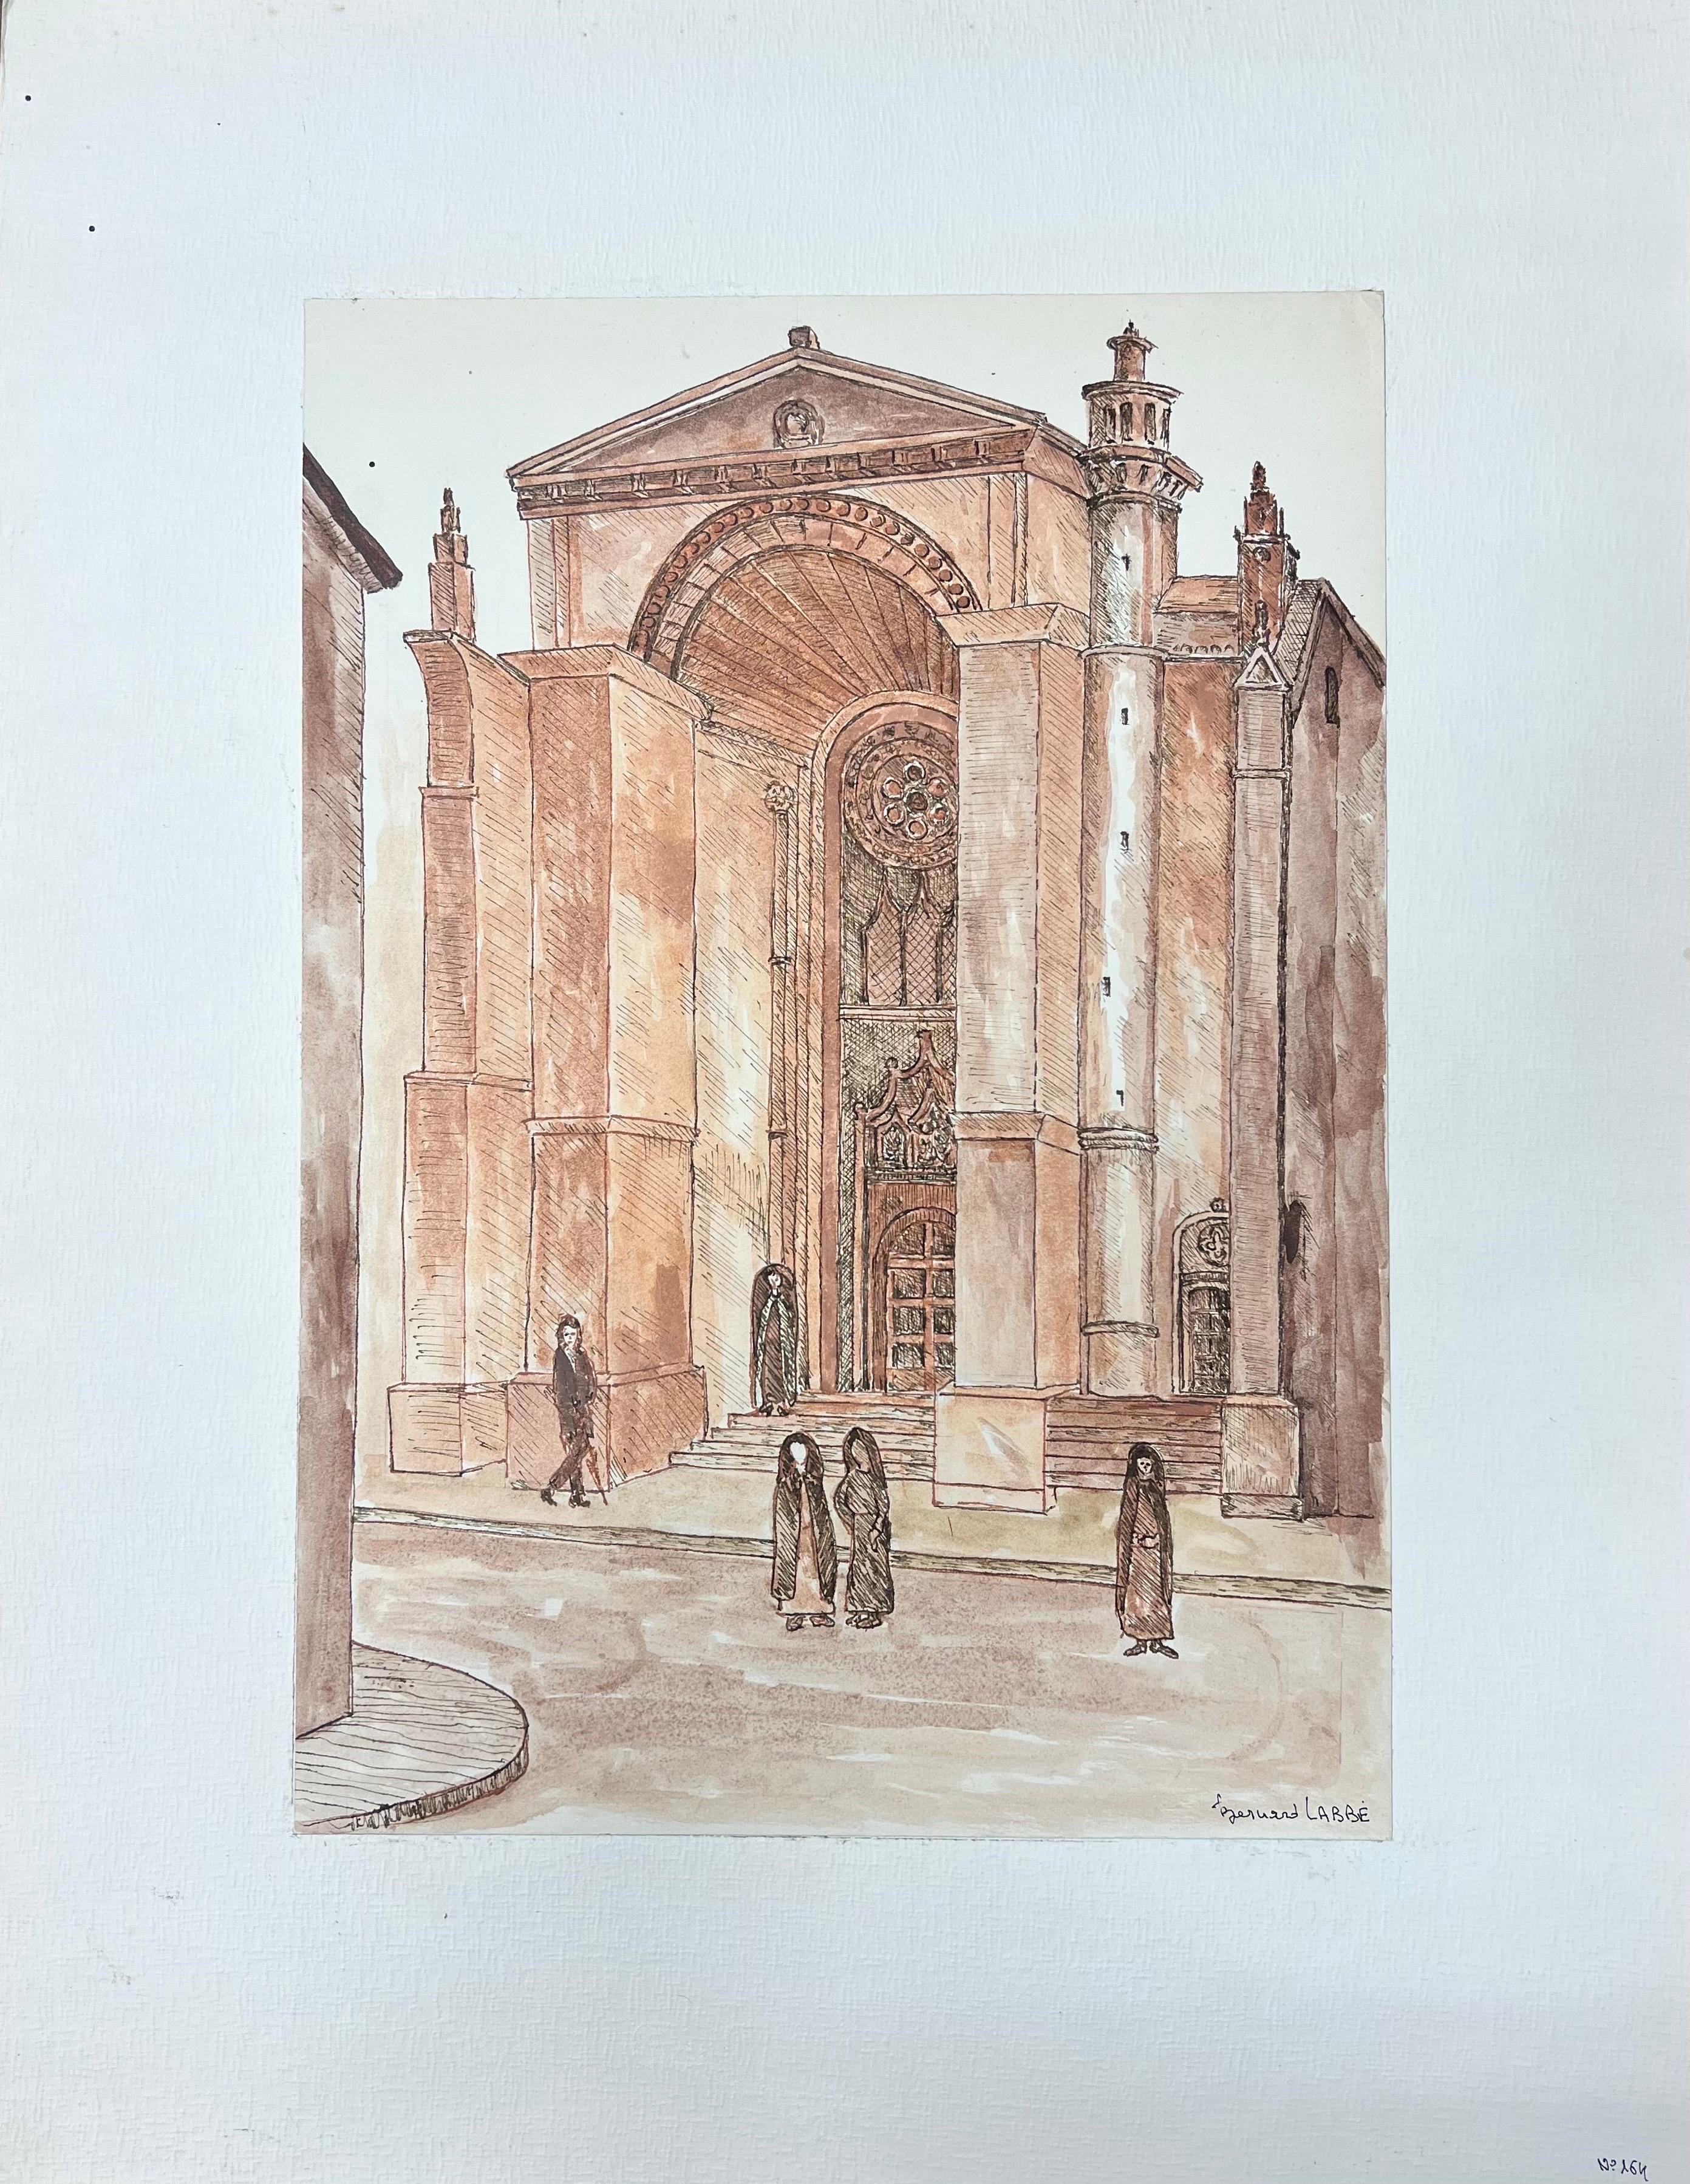 Peinture moderniste/ cubiste des années 1950 - Figures de cathédrales françaises - Art de Bernard Labbe